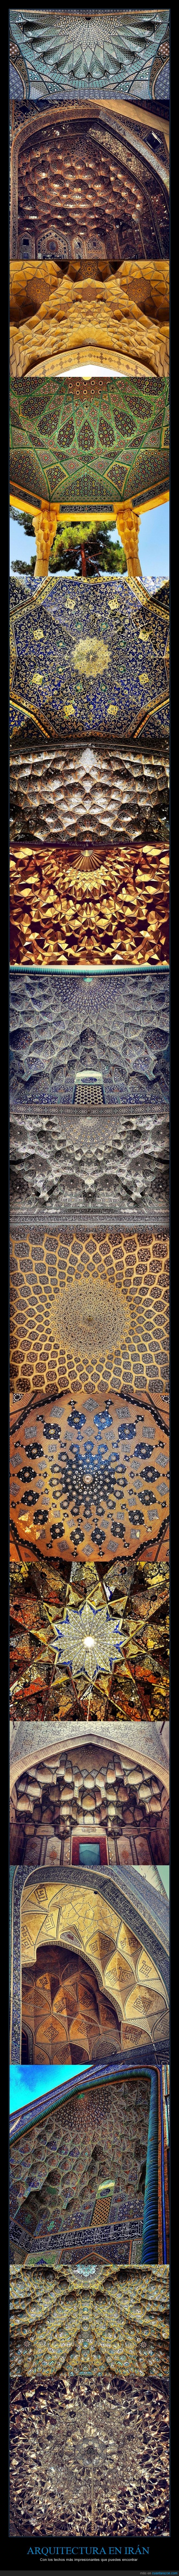 arquitectura,techo,Iran,mezquita,arte,artístico